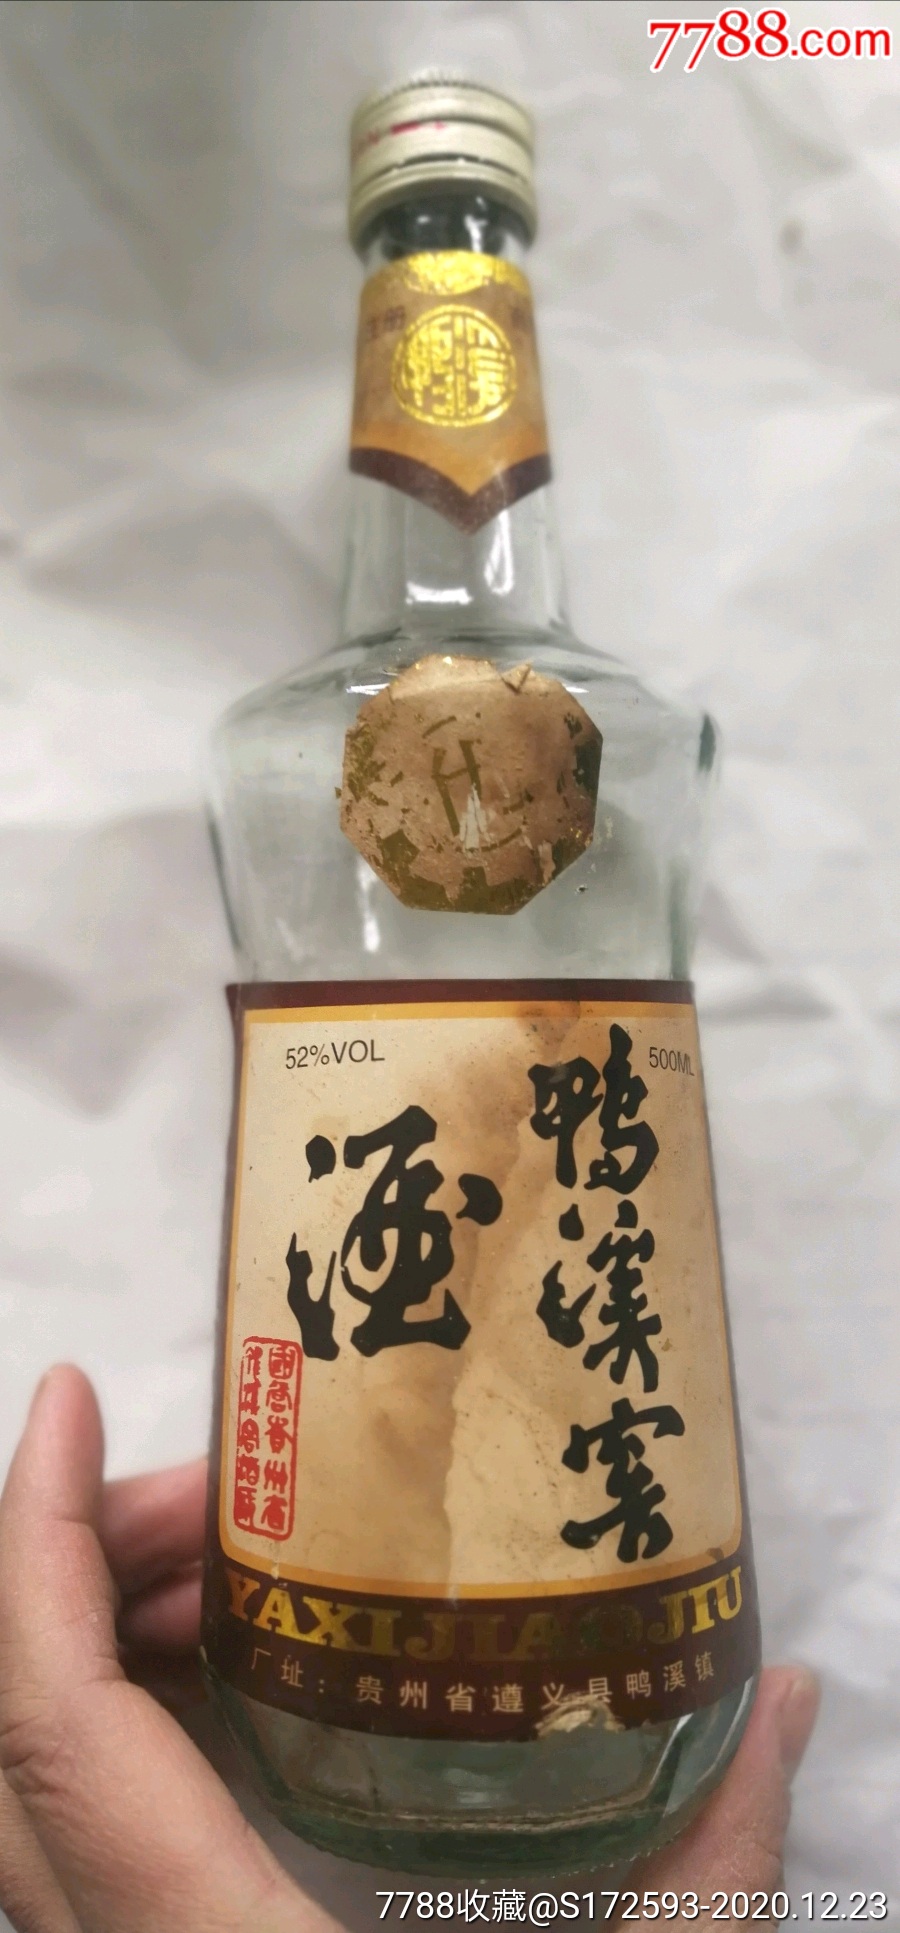 88年(贵州名酒鸭溪窖瓶)一斤装